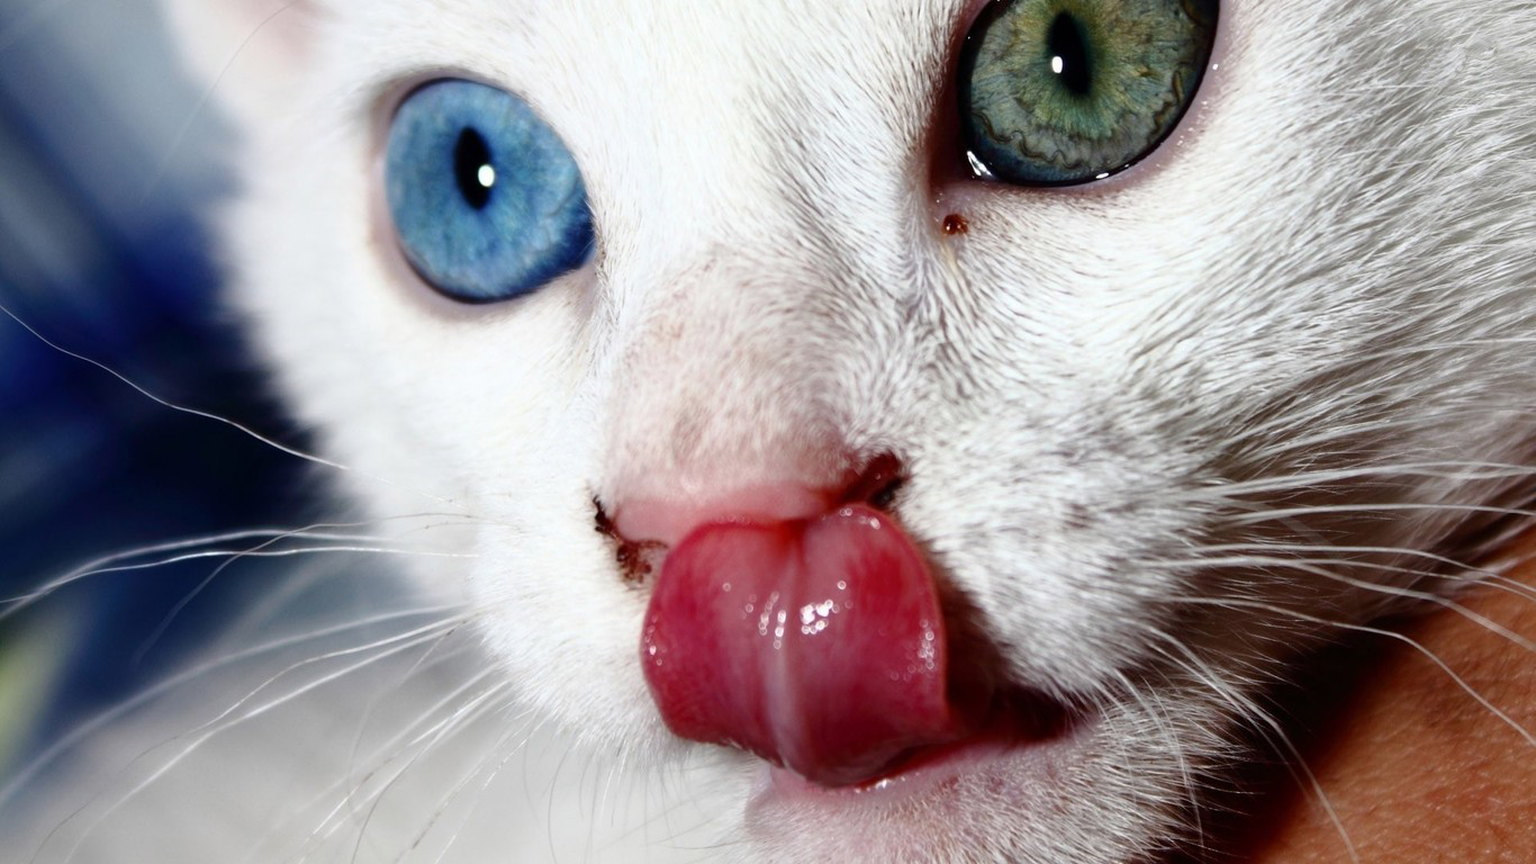 Odd-eyed Katzen mit zweifarbigen Augen. Katzenaugen